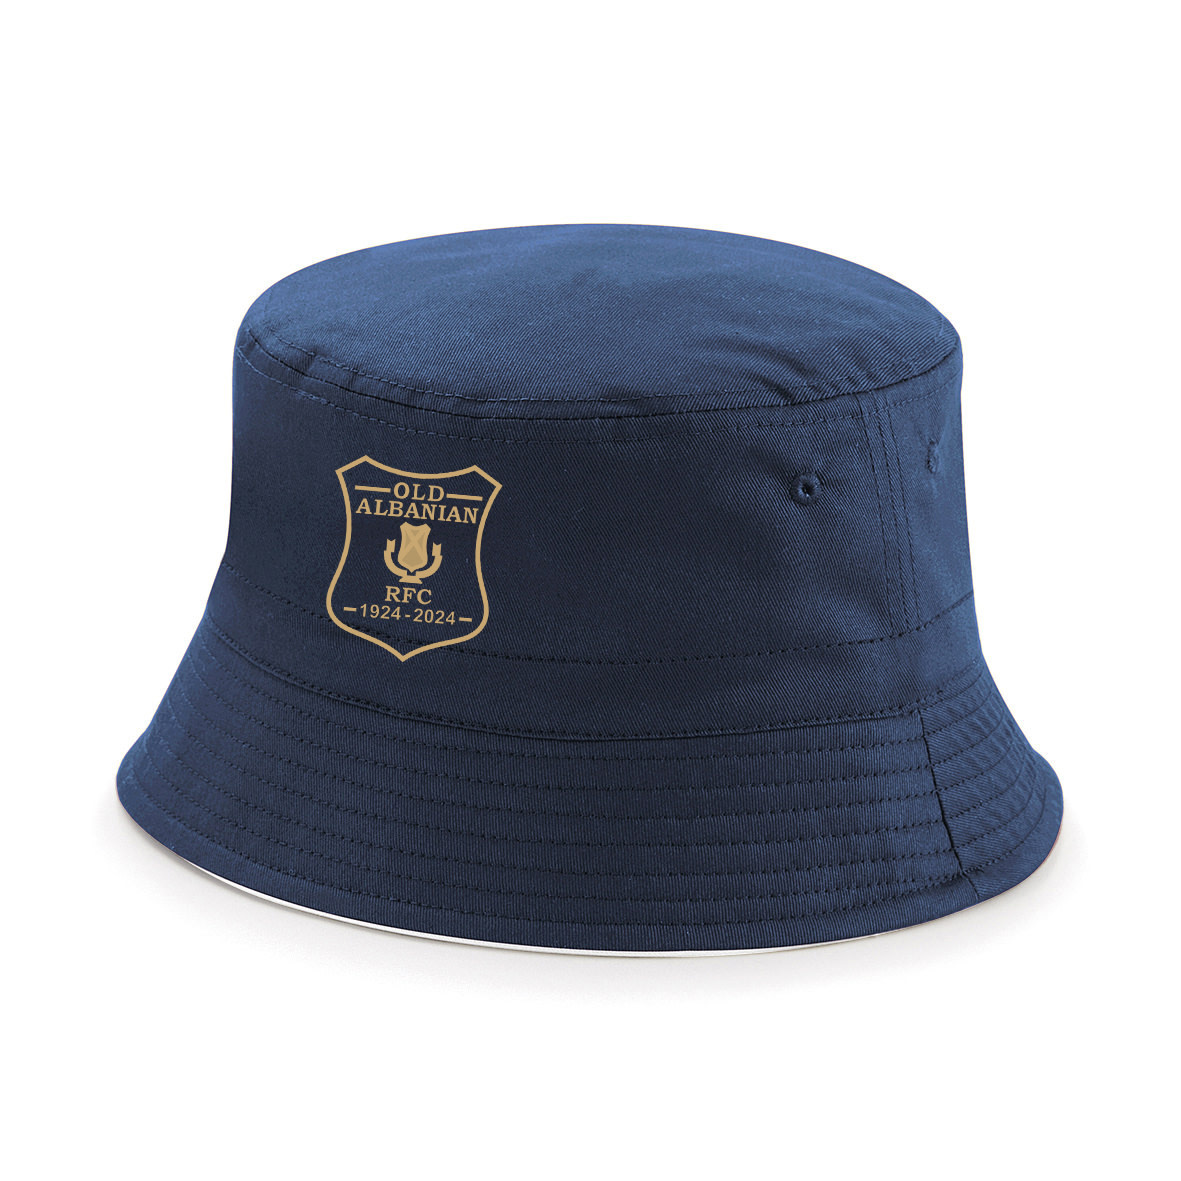 OA Centenary Adults Bucket Hat